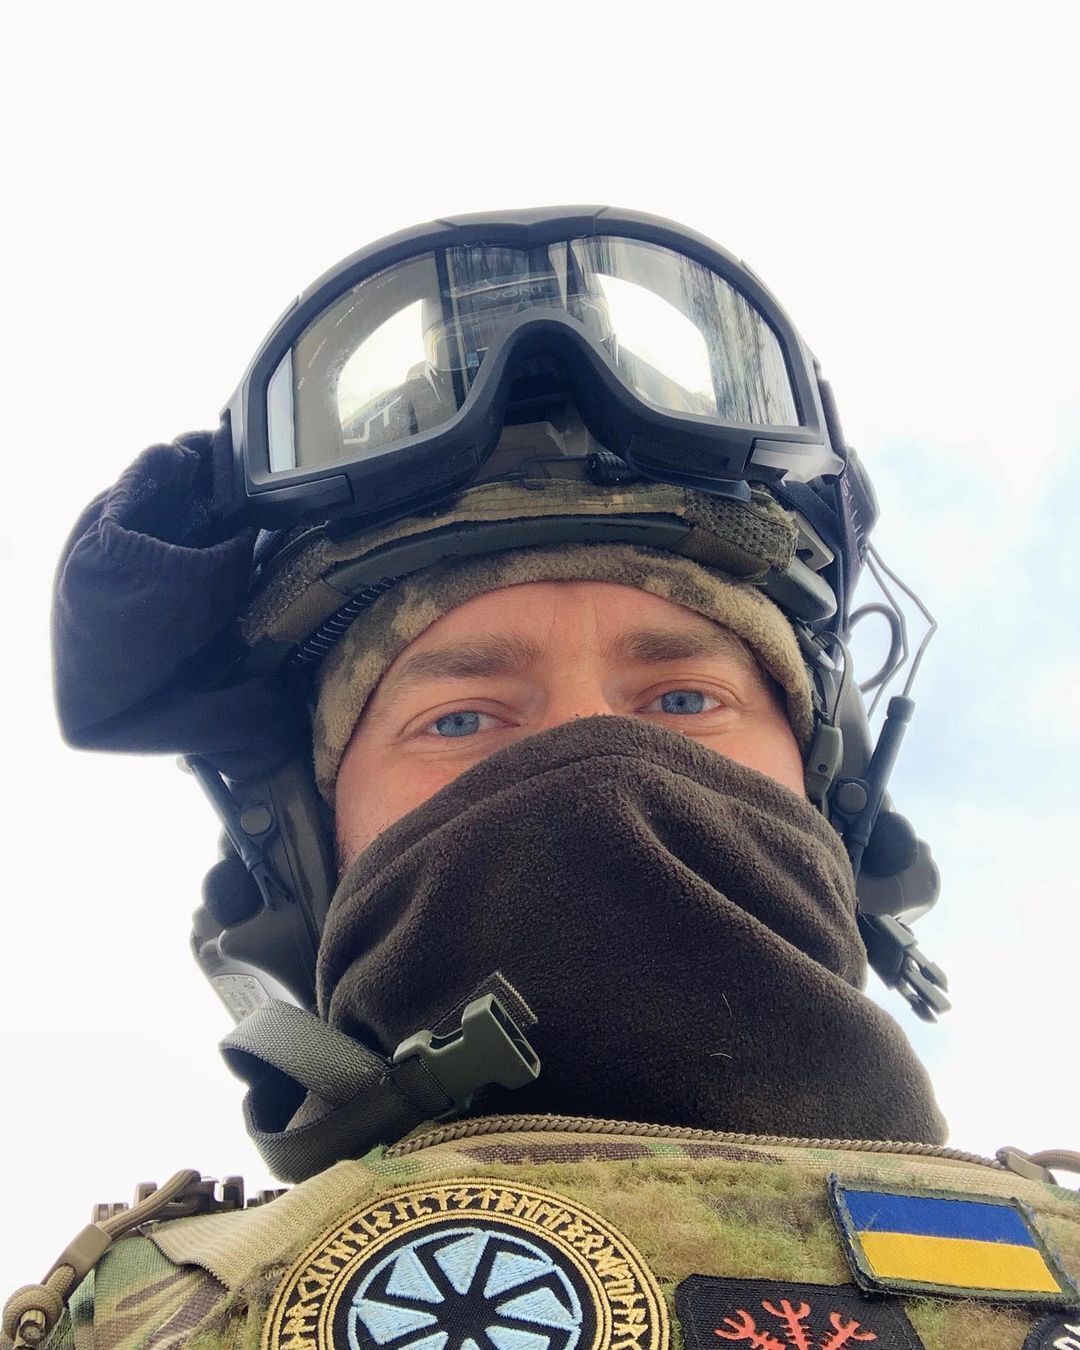 Дмитрий Дикусар, защищающий Украину на фронте, дал прогноз об окончании войны: сейчас мы застряли